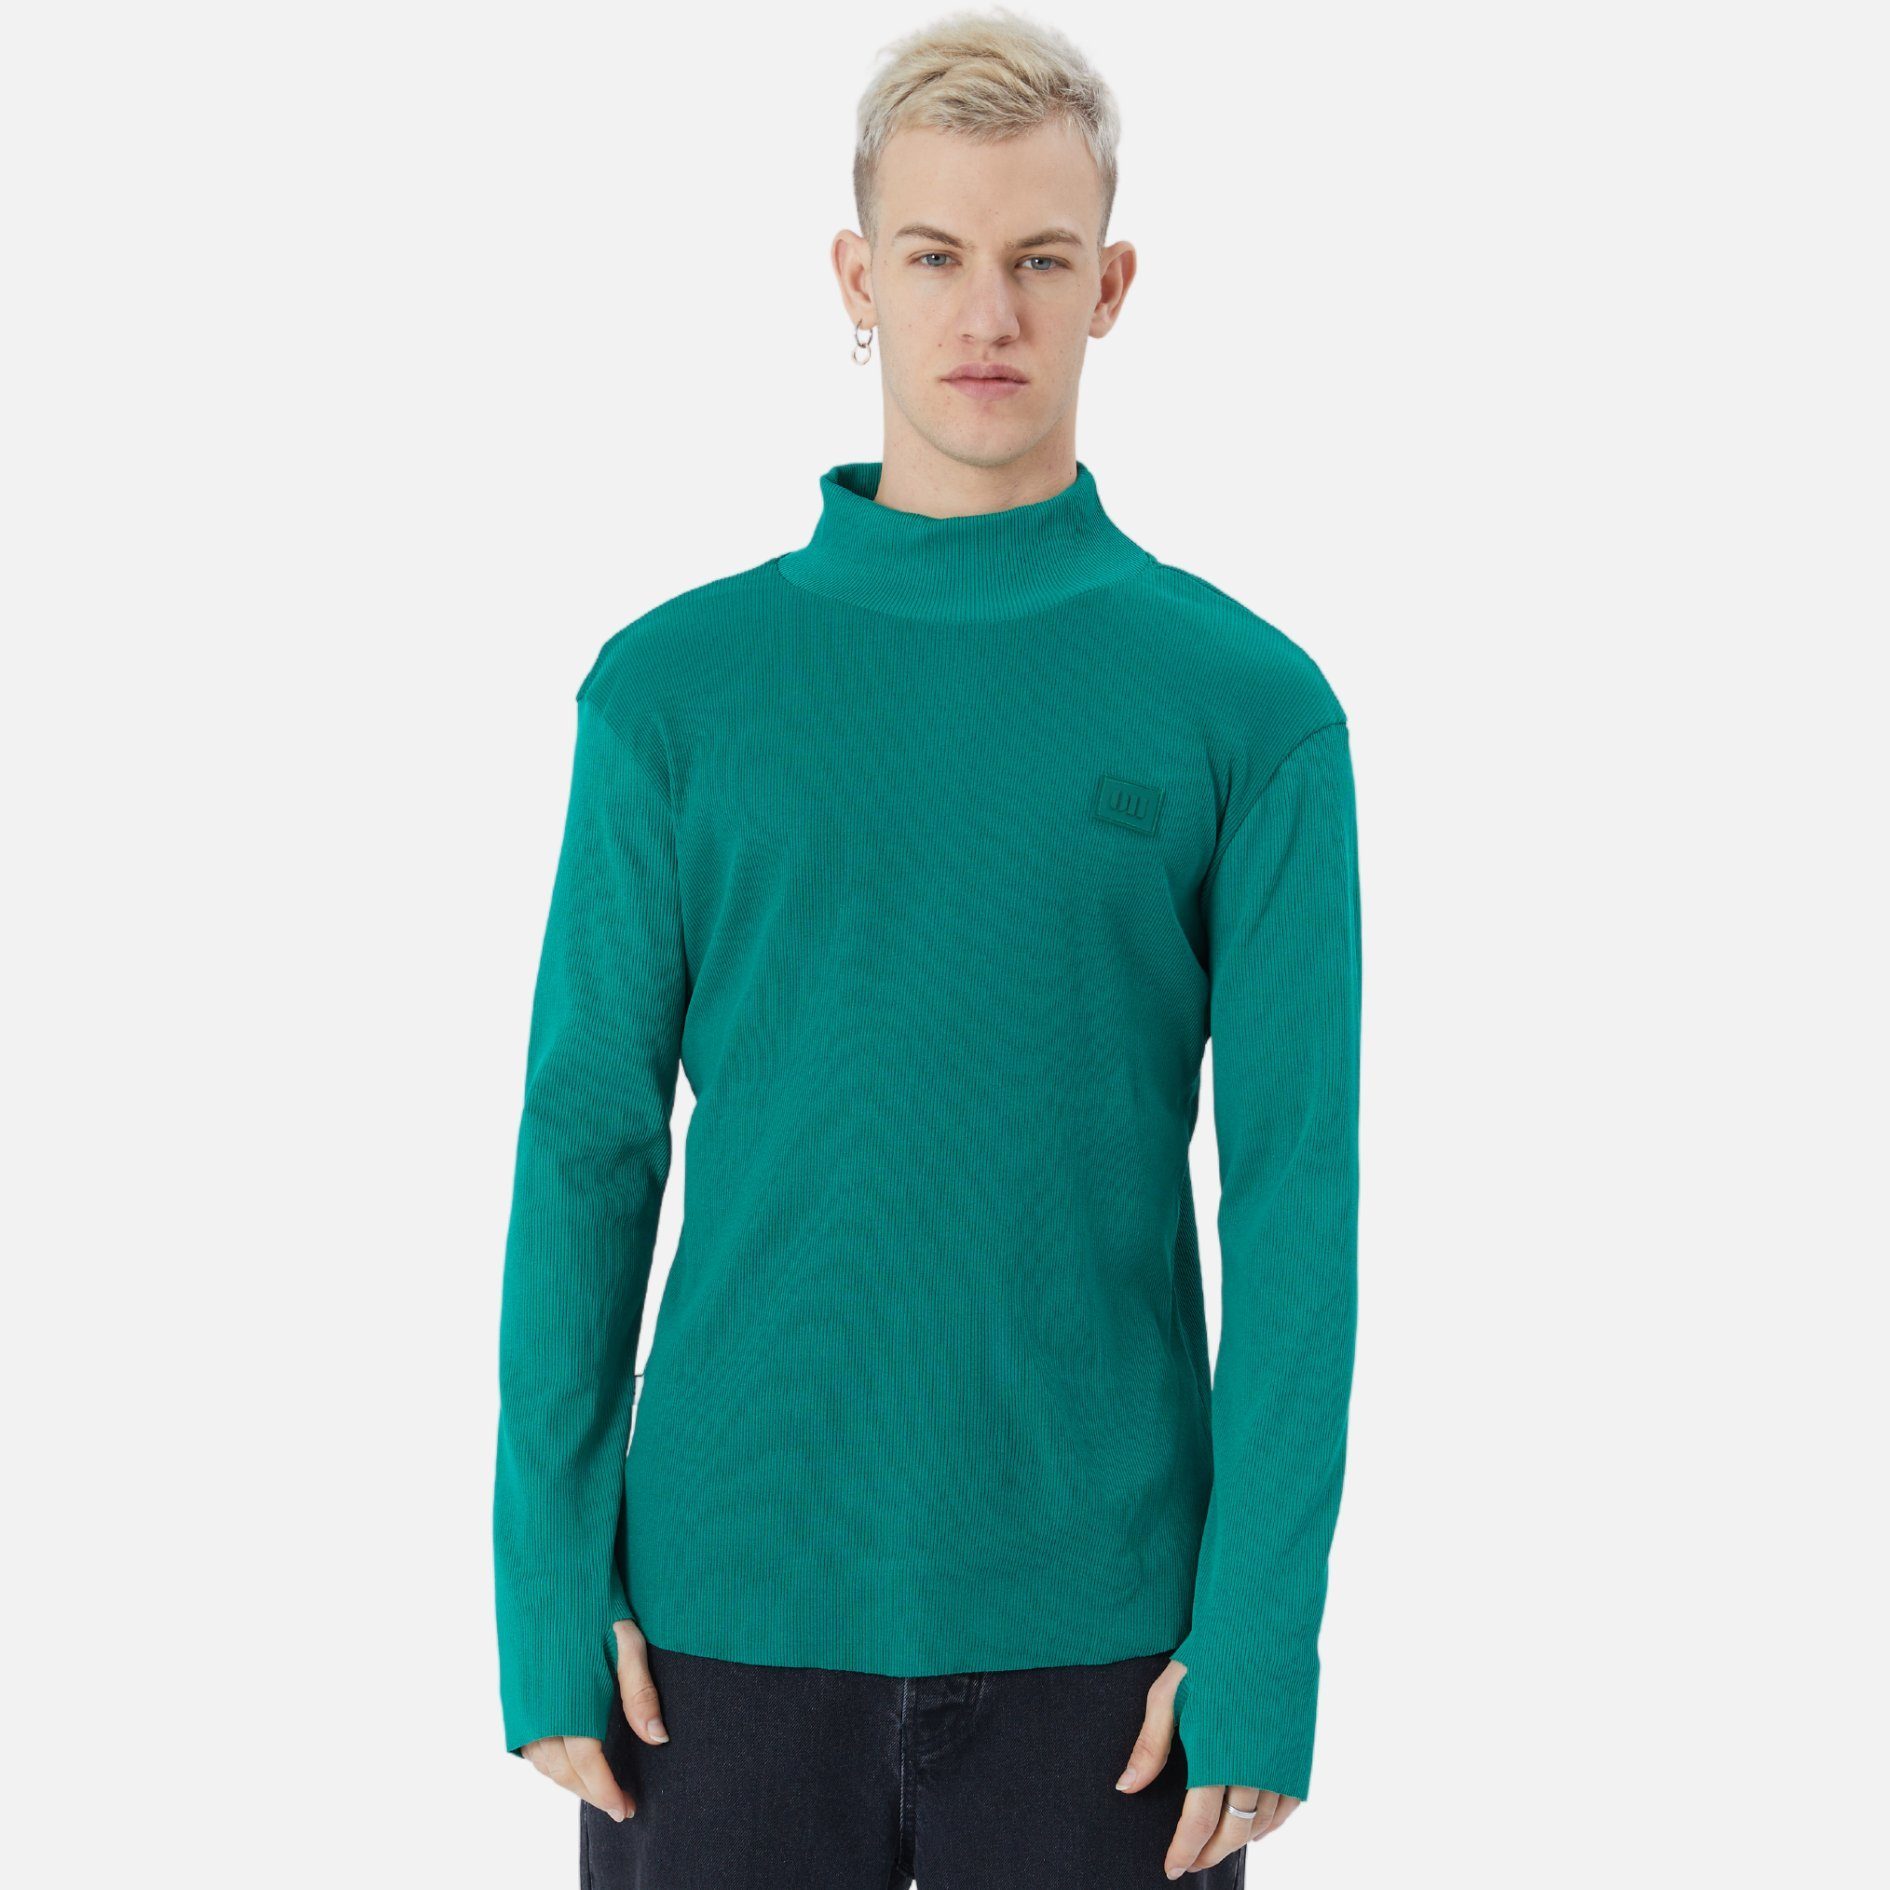 COFI Casuals Sweatshirt Herren Rundhals Sweatshirt Regular Fit Pullover Grün